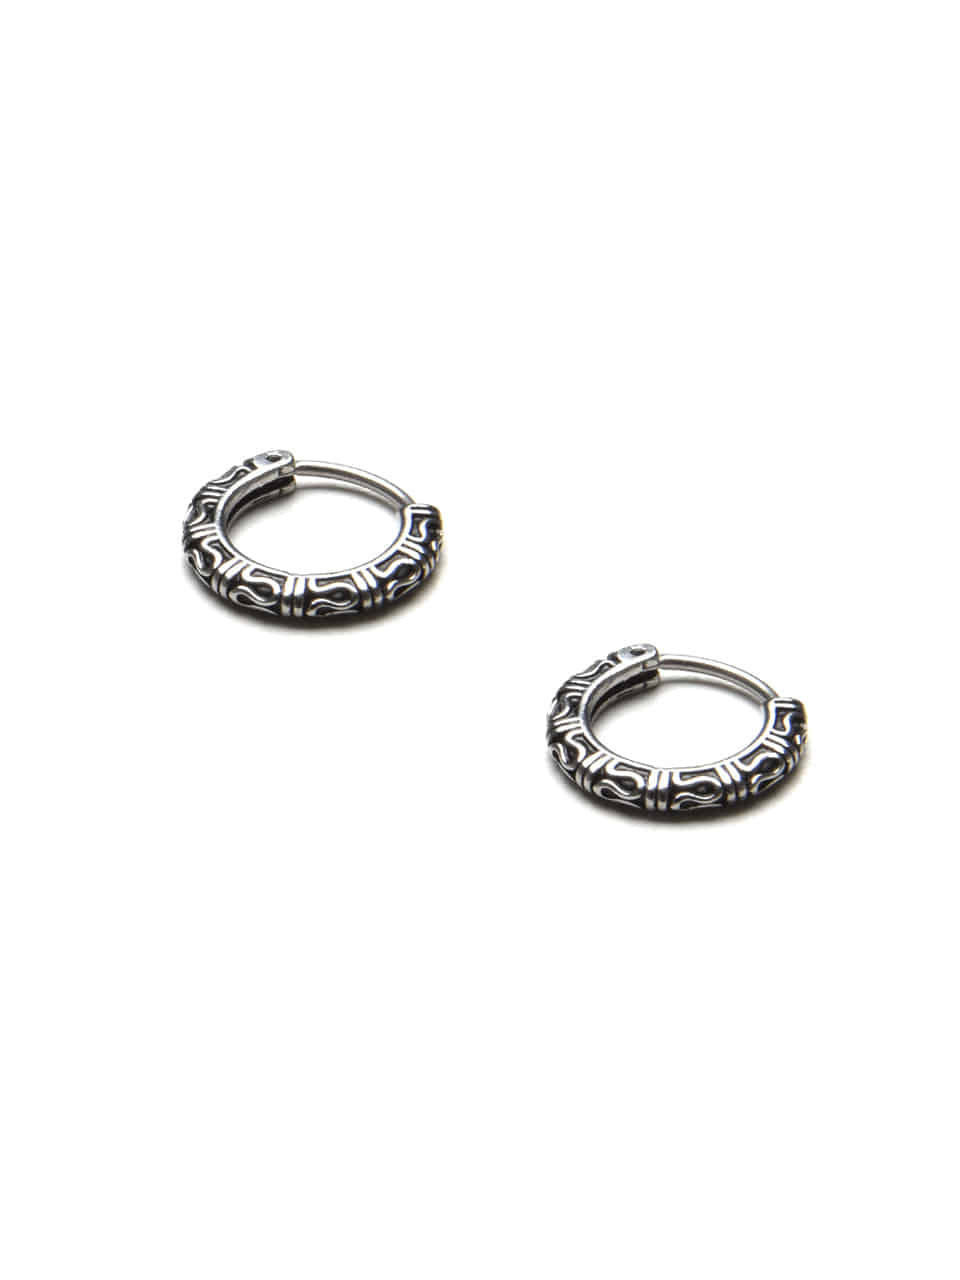 BA005 [Surgical steel] Antique pattern earrings